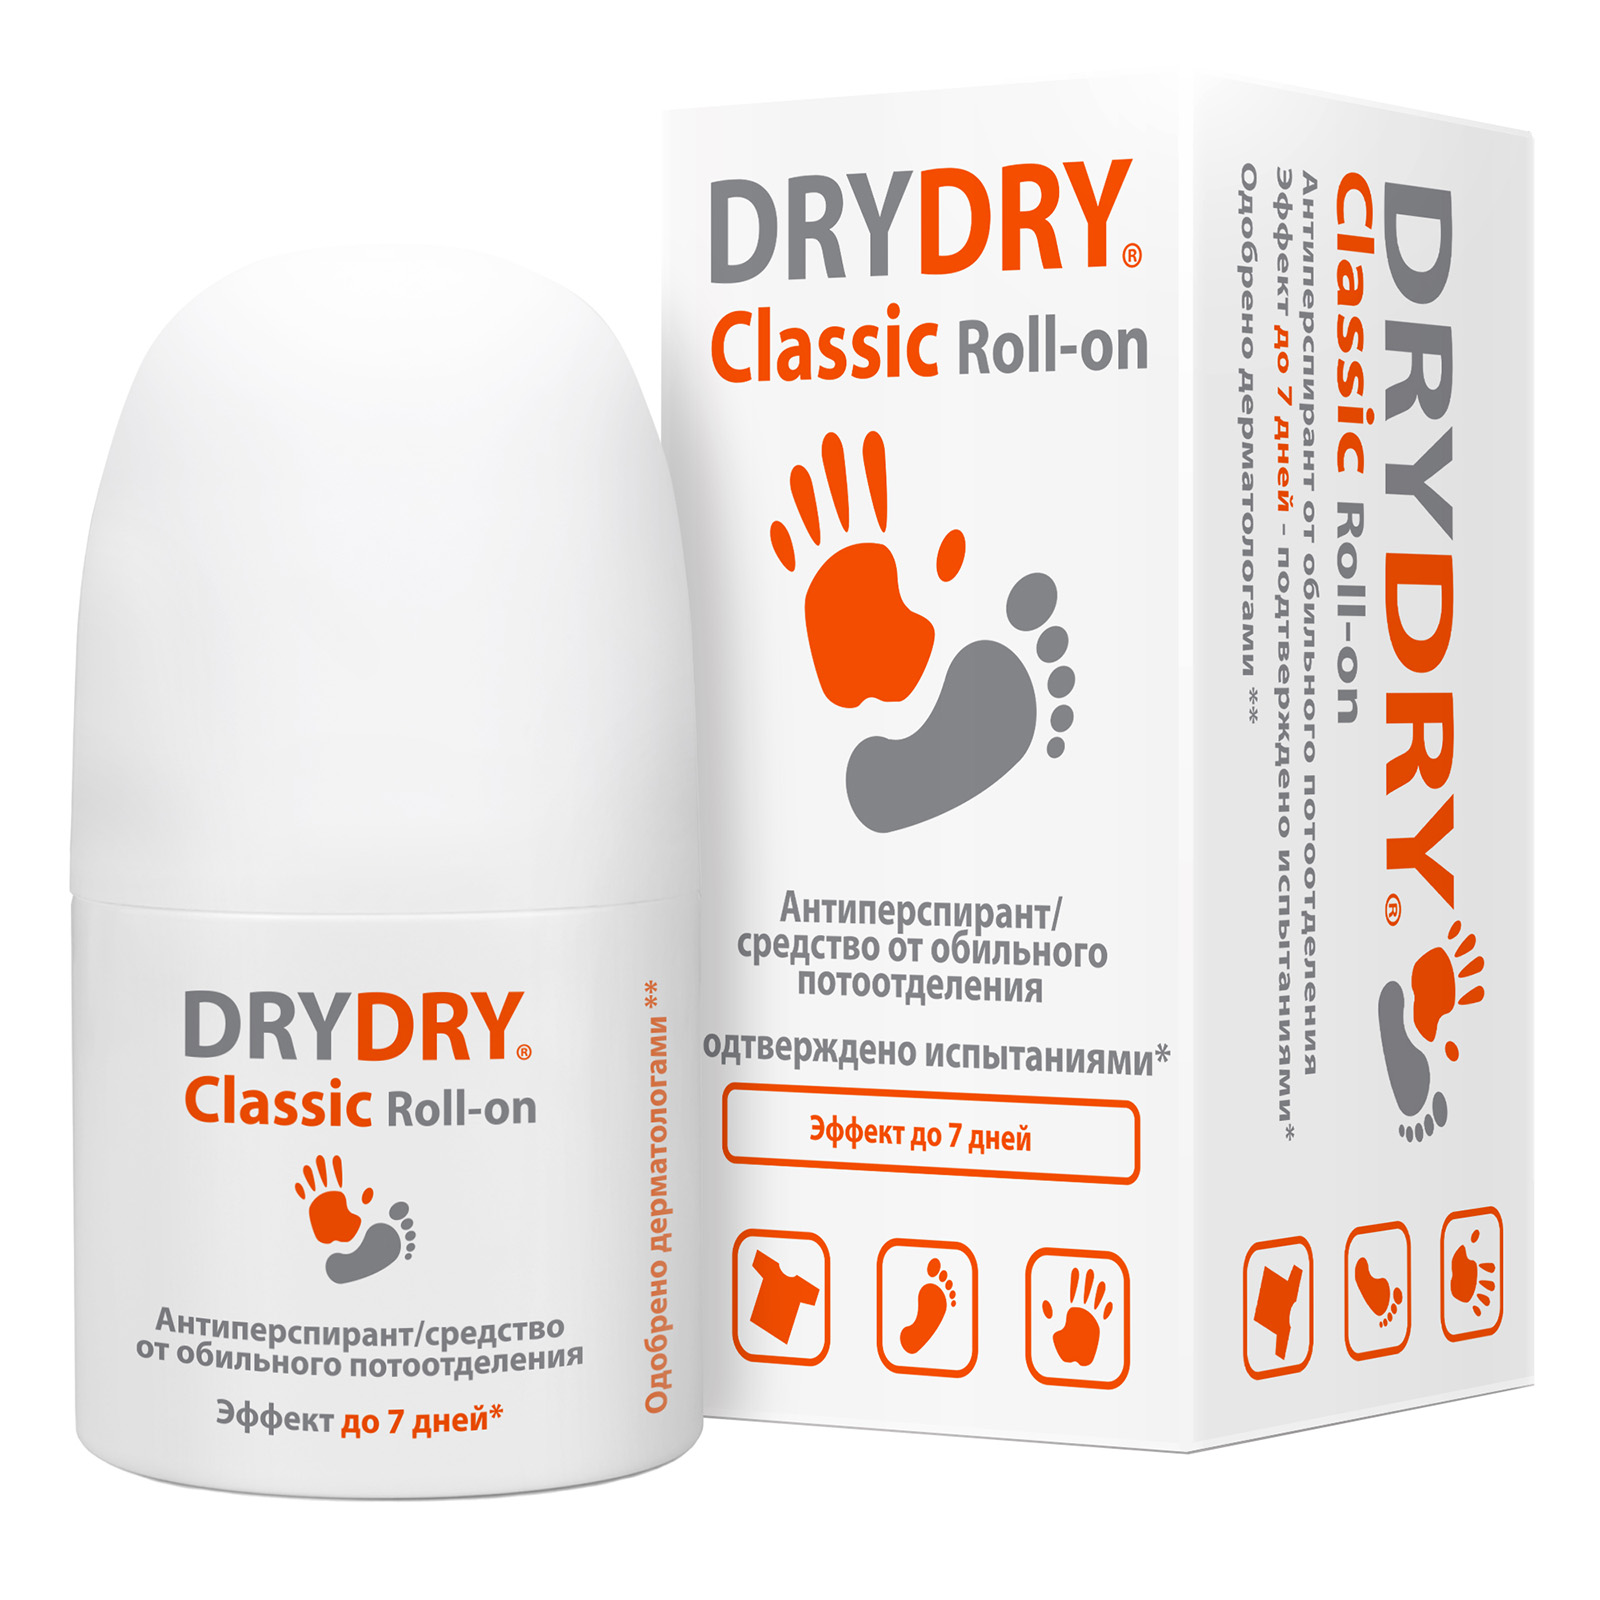 Dry Dry Дезодорант-антиперспирант от обильного потоотделения